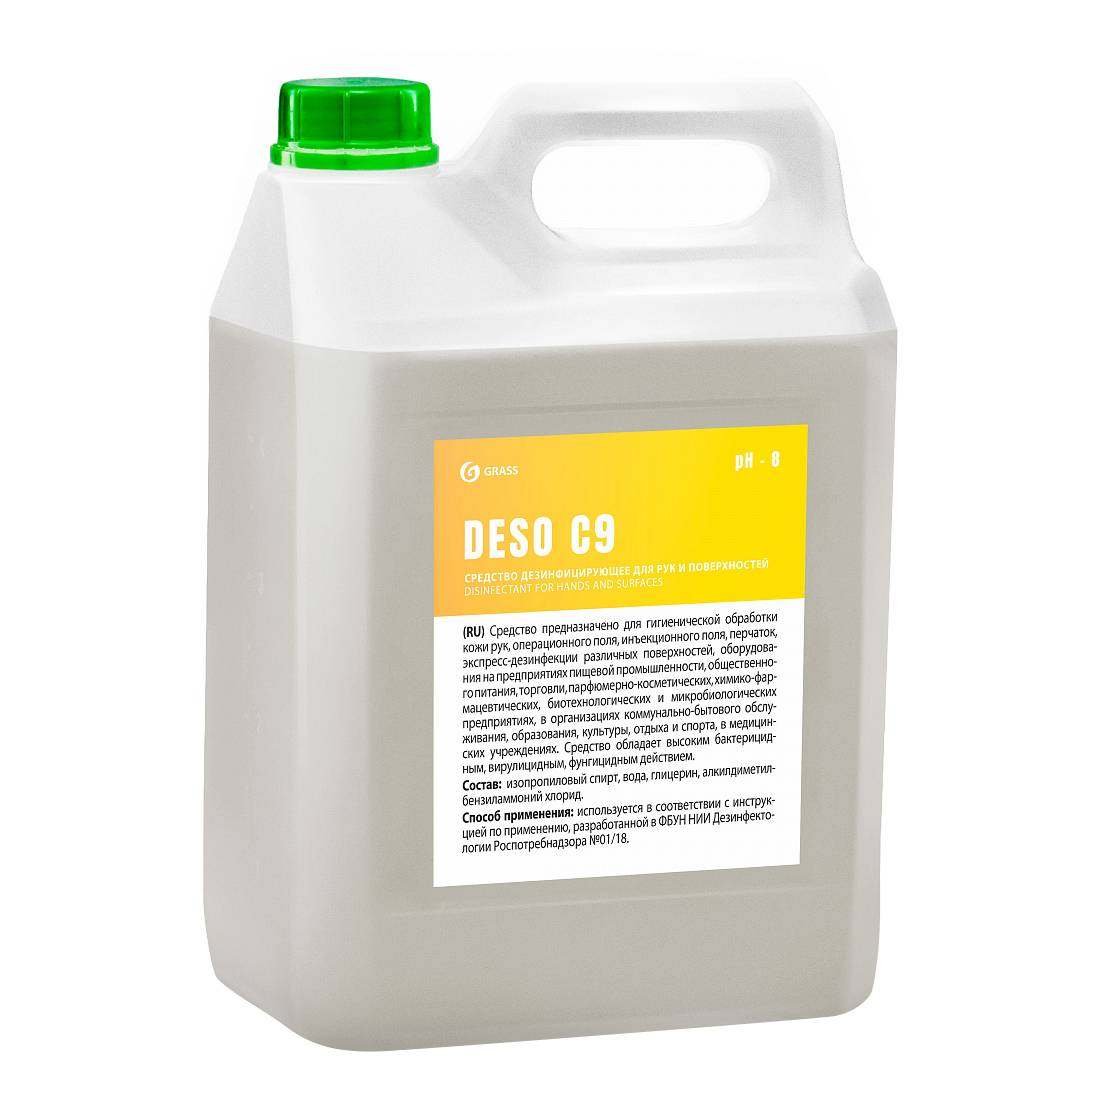 Grass DESO C9, 5 л, дезинфицирующее средство